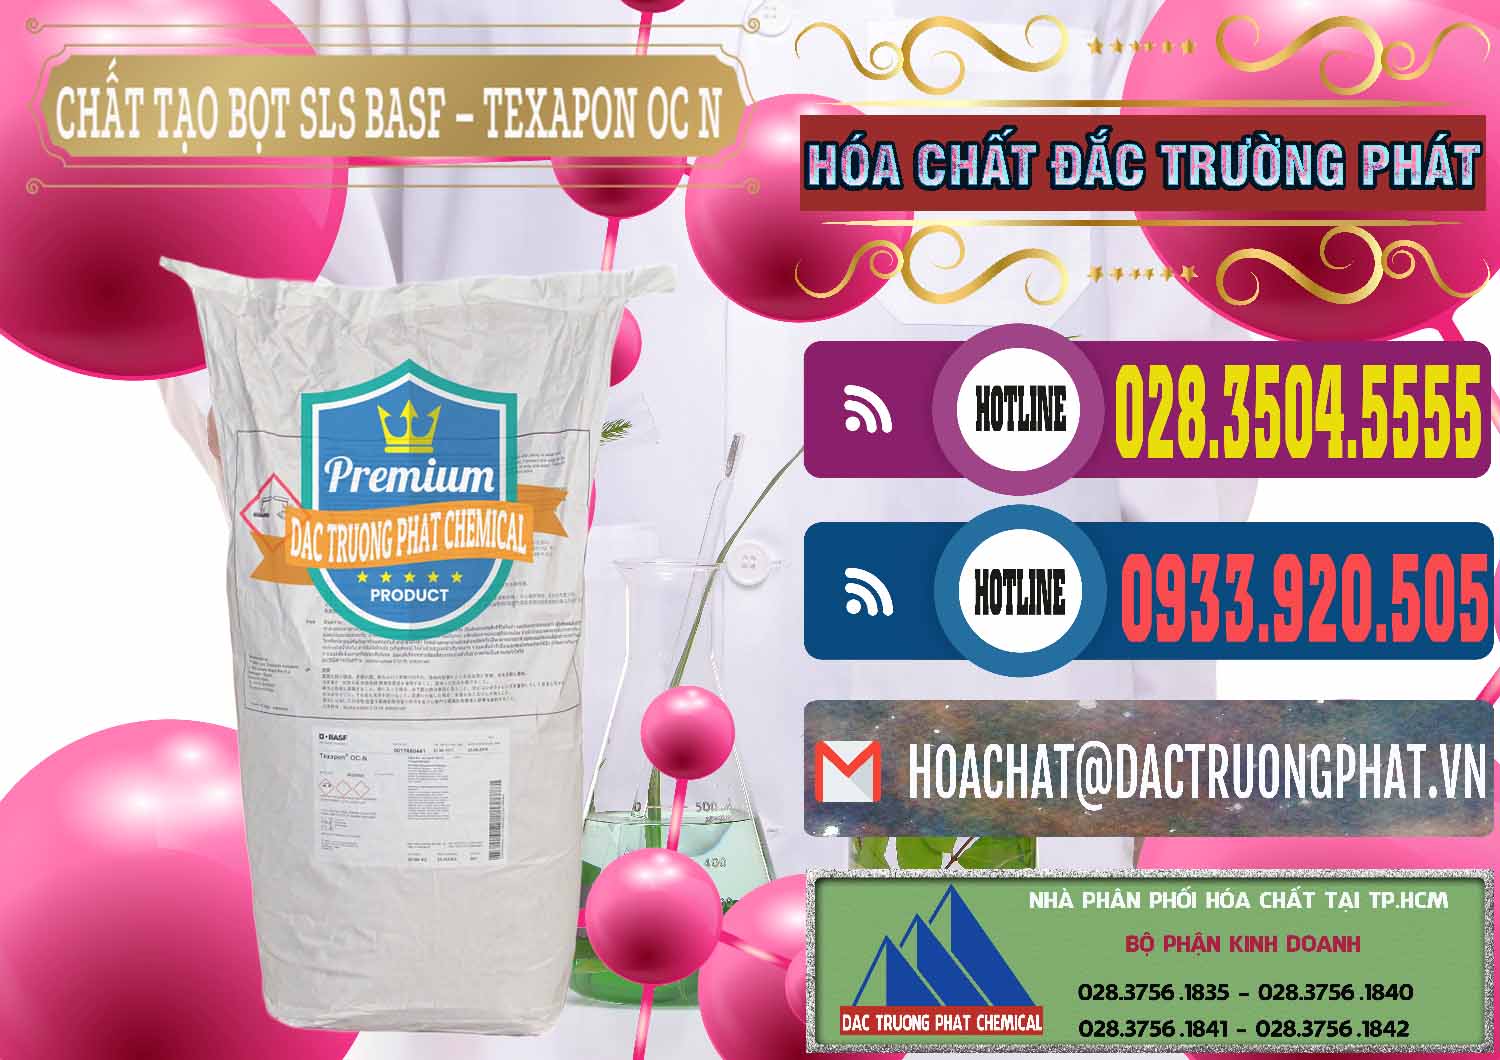 Đơn vị chuyên bán - cung ứng Chất Tạo Bọt SLS - Sodium Lauryl Sulfate BASF Texapon OC N - 0049 - Công ty chuyên bán và phân phối hóa chất tại TP.HCM - muabanhoachat.com.vn